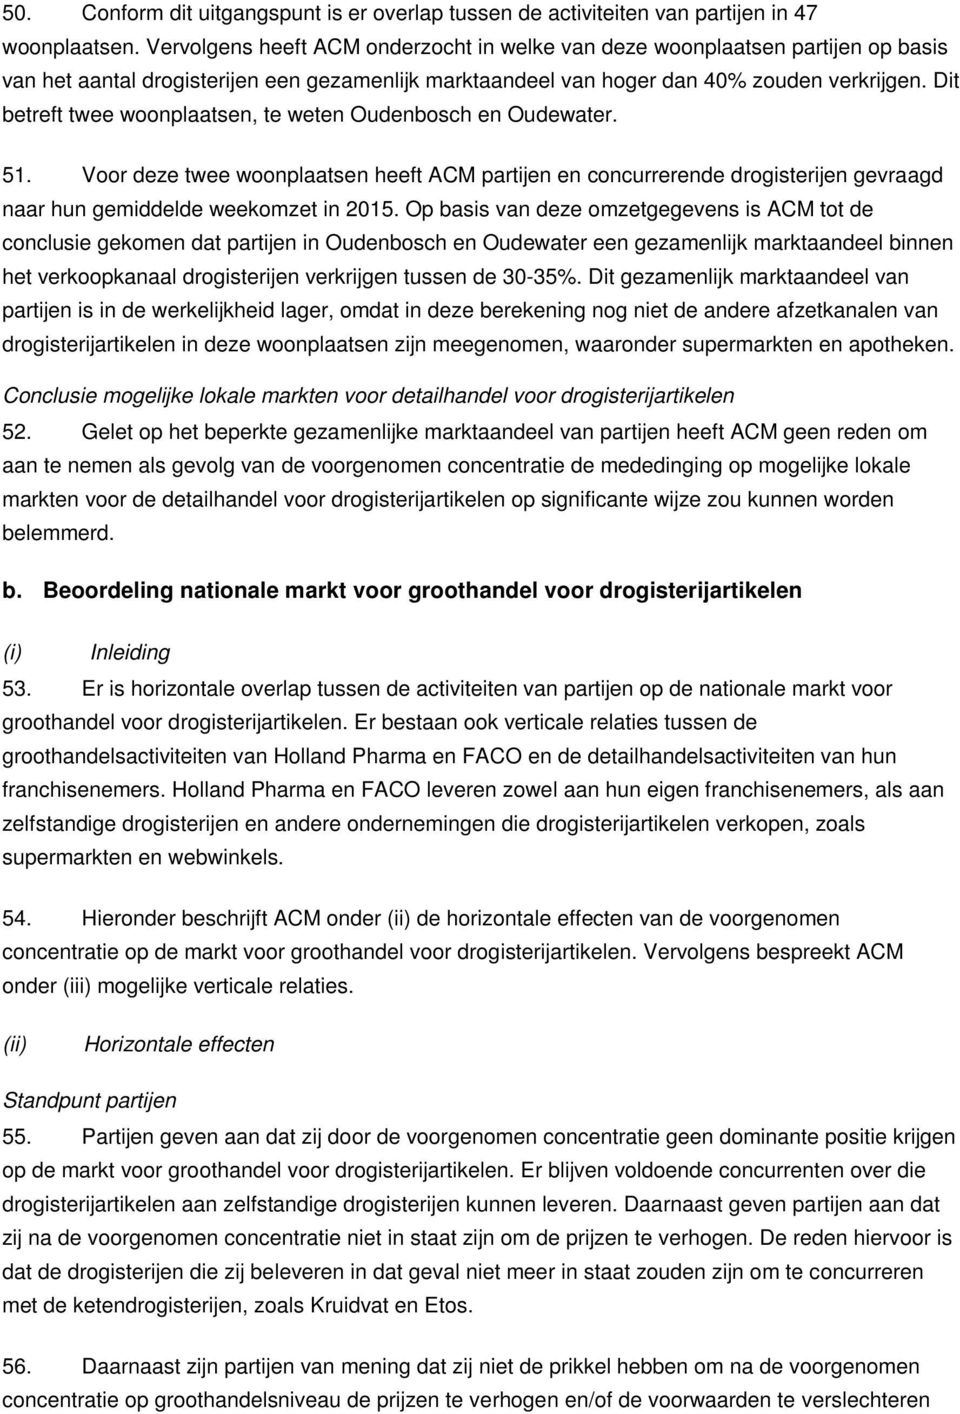 Dit betreft twee woonplaatsen, te weten Oudenbosch en Oudewater. 51. Voor deze twee woonplaatsen heeft ACM partijen en concurrerende drogisterijen gevraagd naar hun gemiddelde weekomzet in 2015.